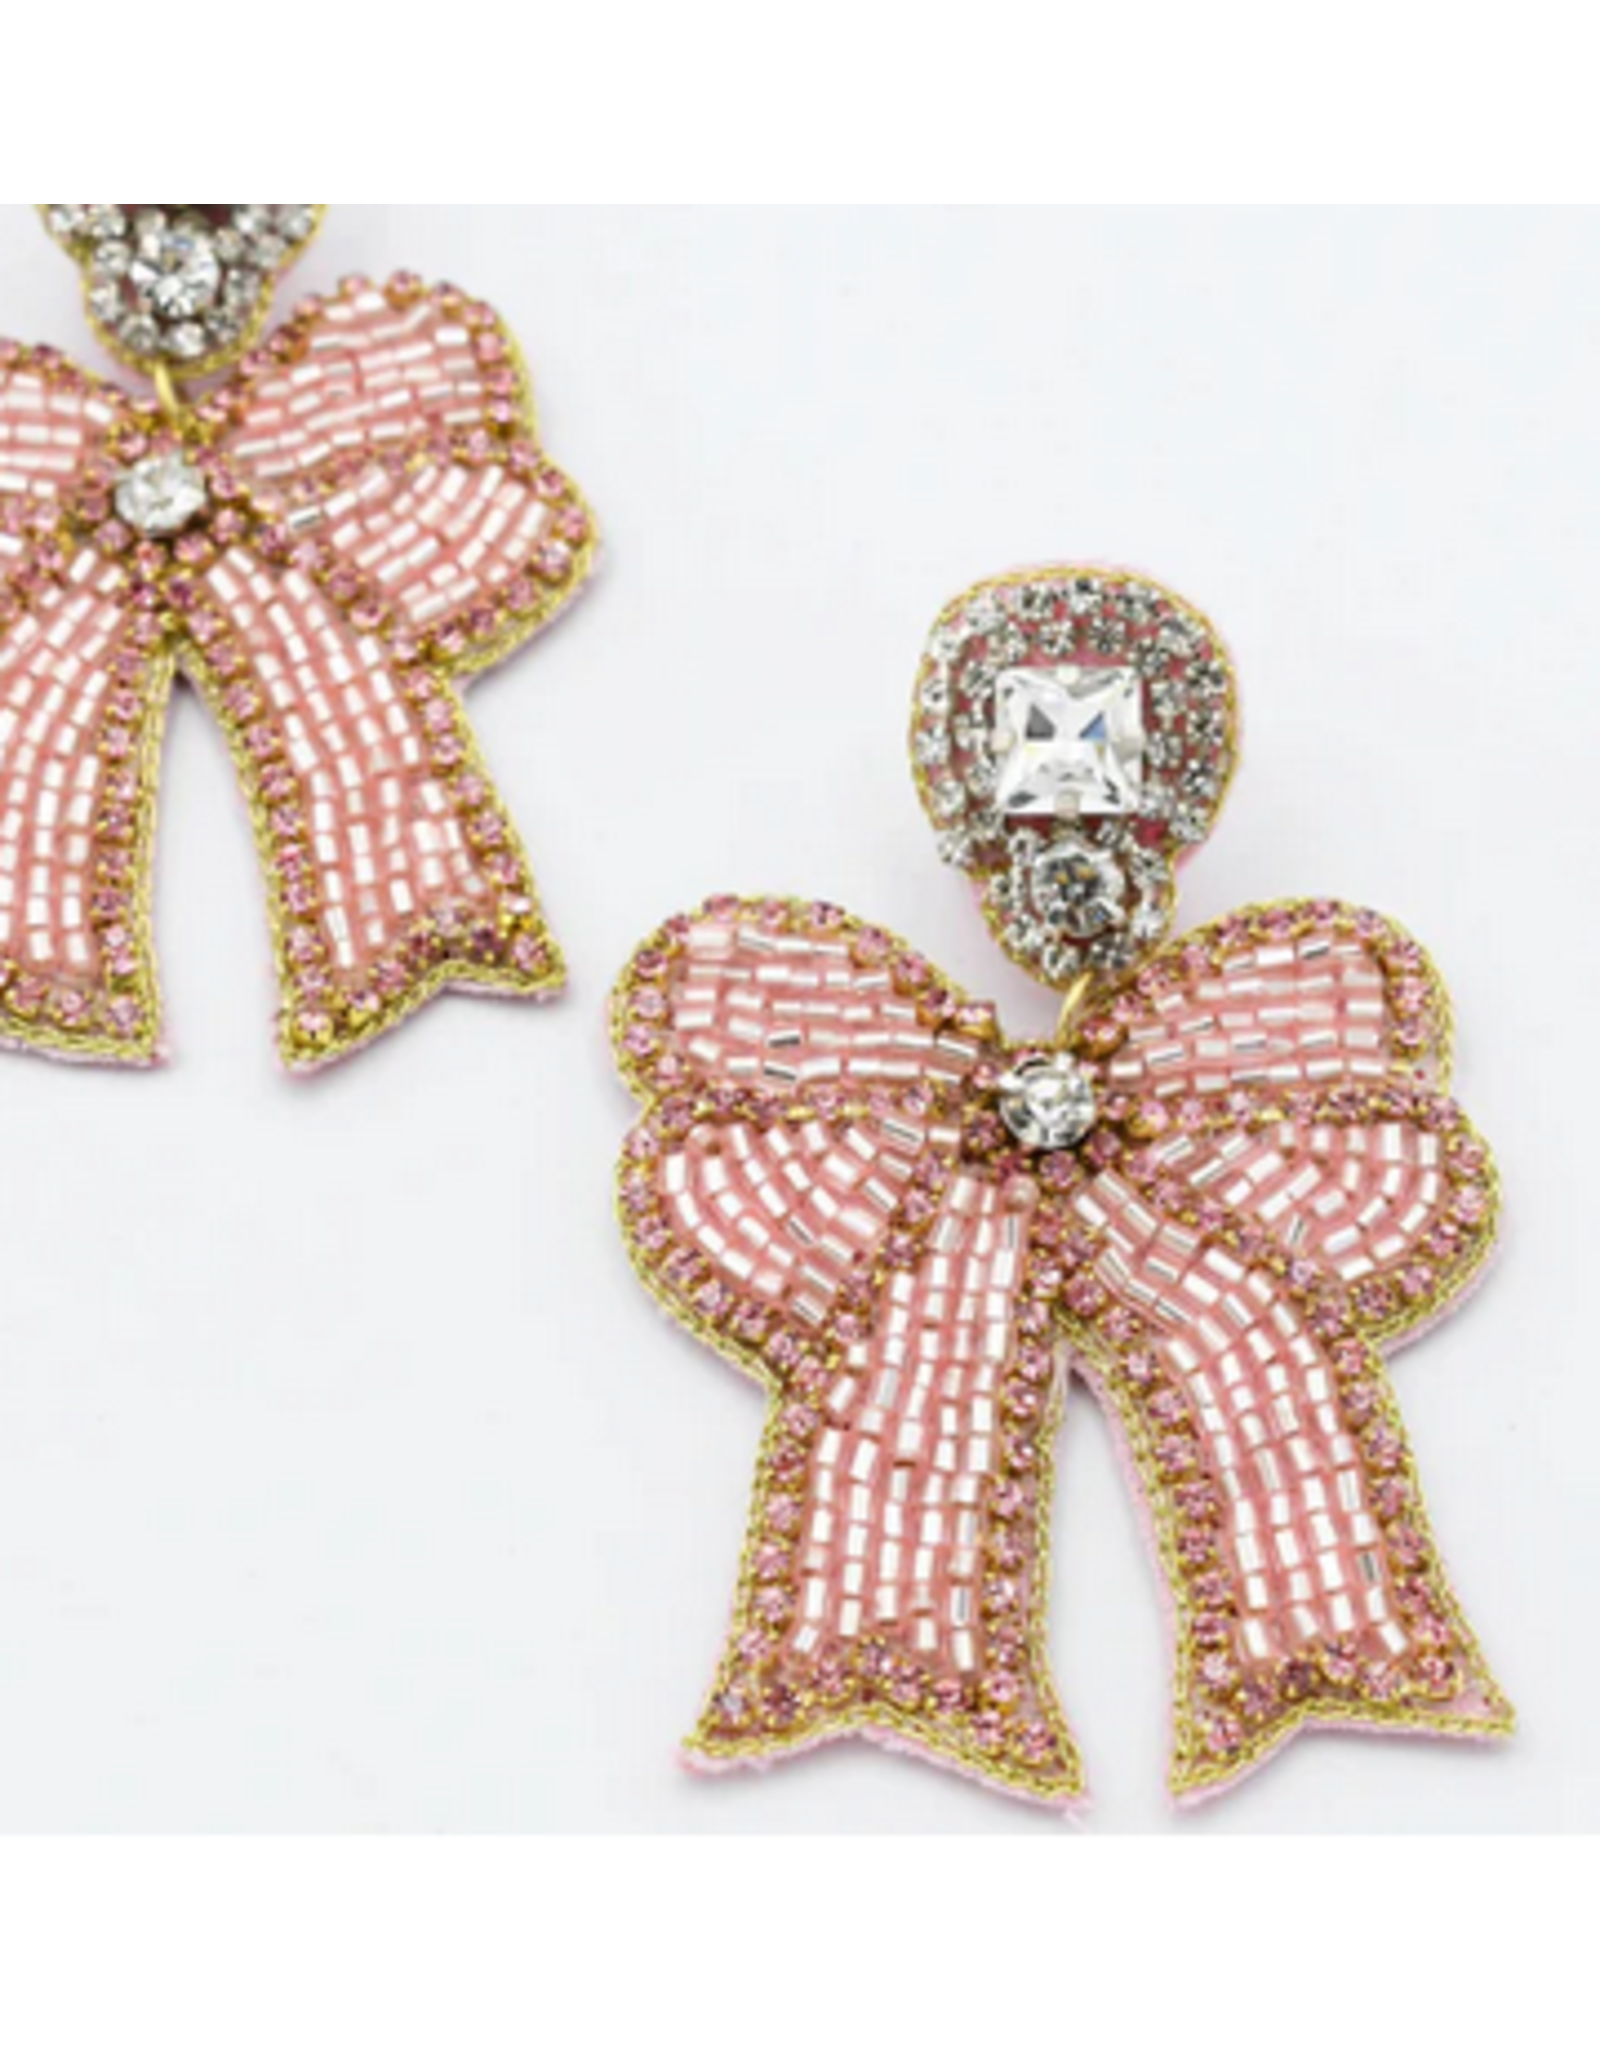 Treasure Jewels Pink Crystal Bow Earrings